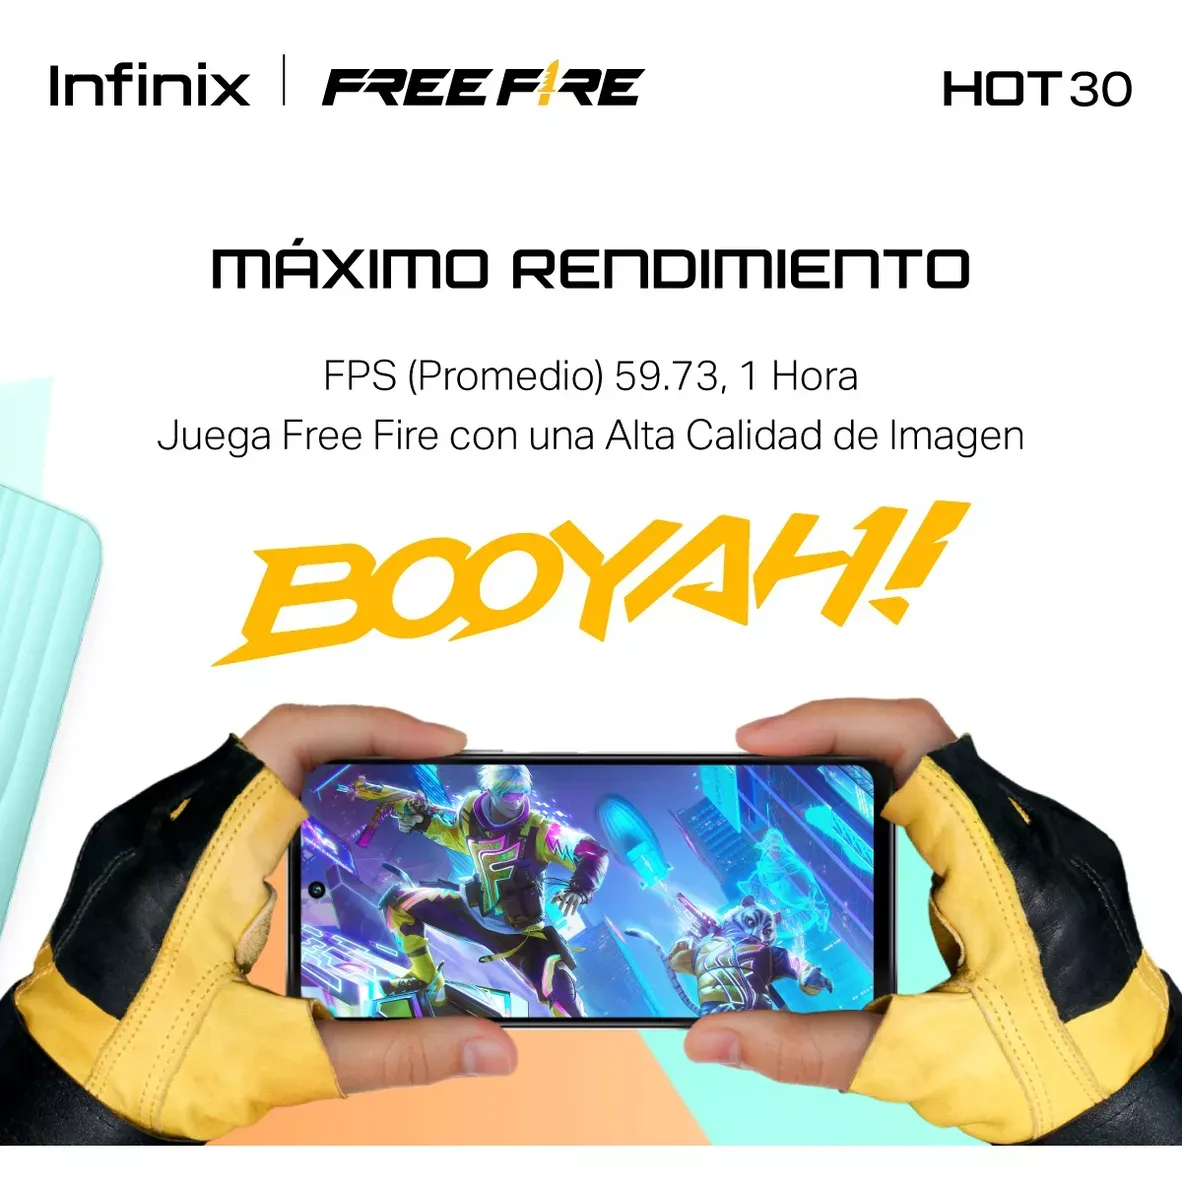 Celular Infinix Hot 30 Free Fire Edition